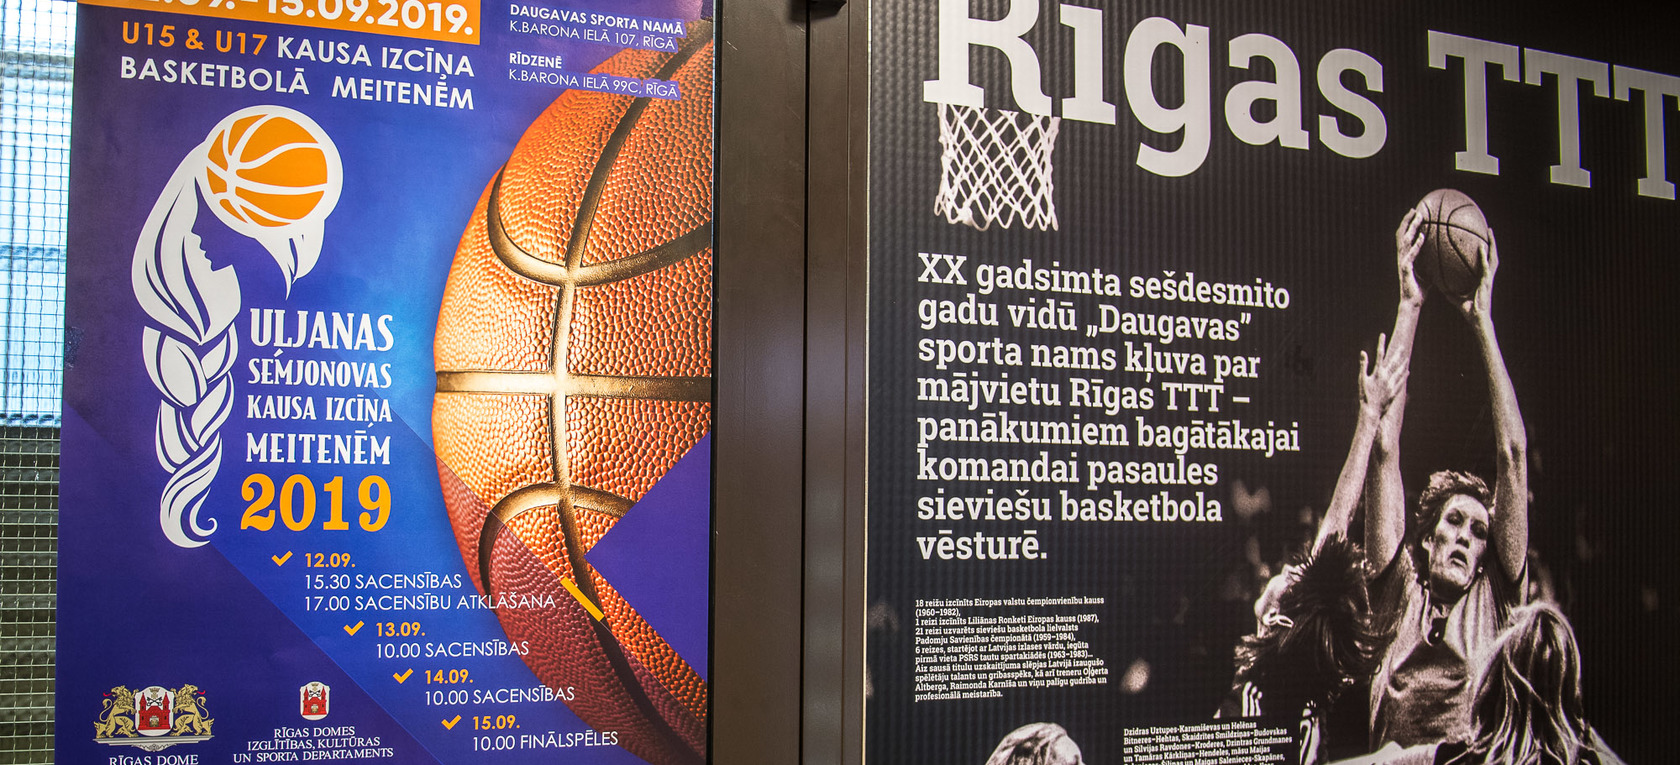 Rīgā sākusies Uļjanas Semjonovas kausa izcīņa basketbolā